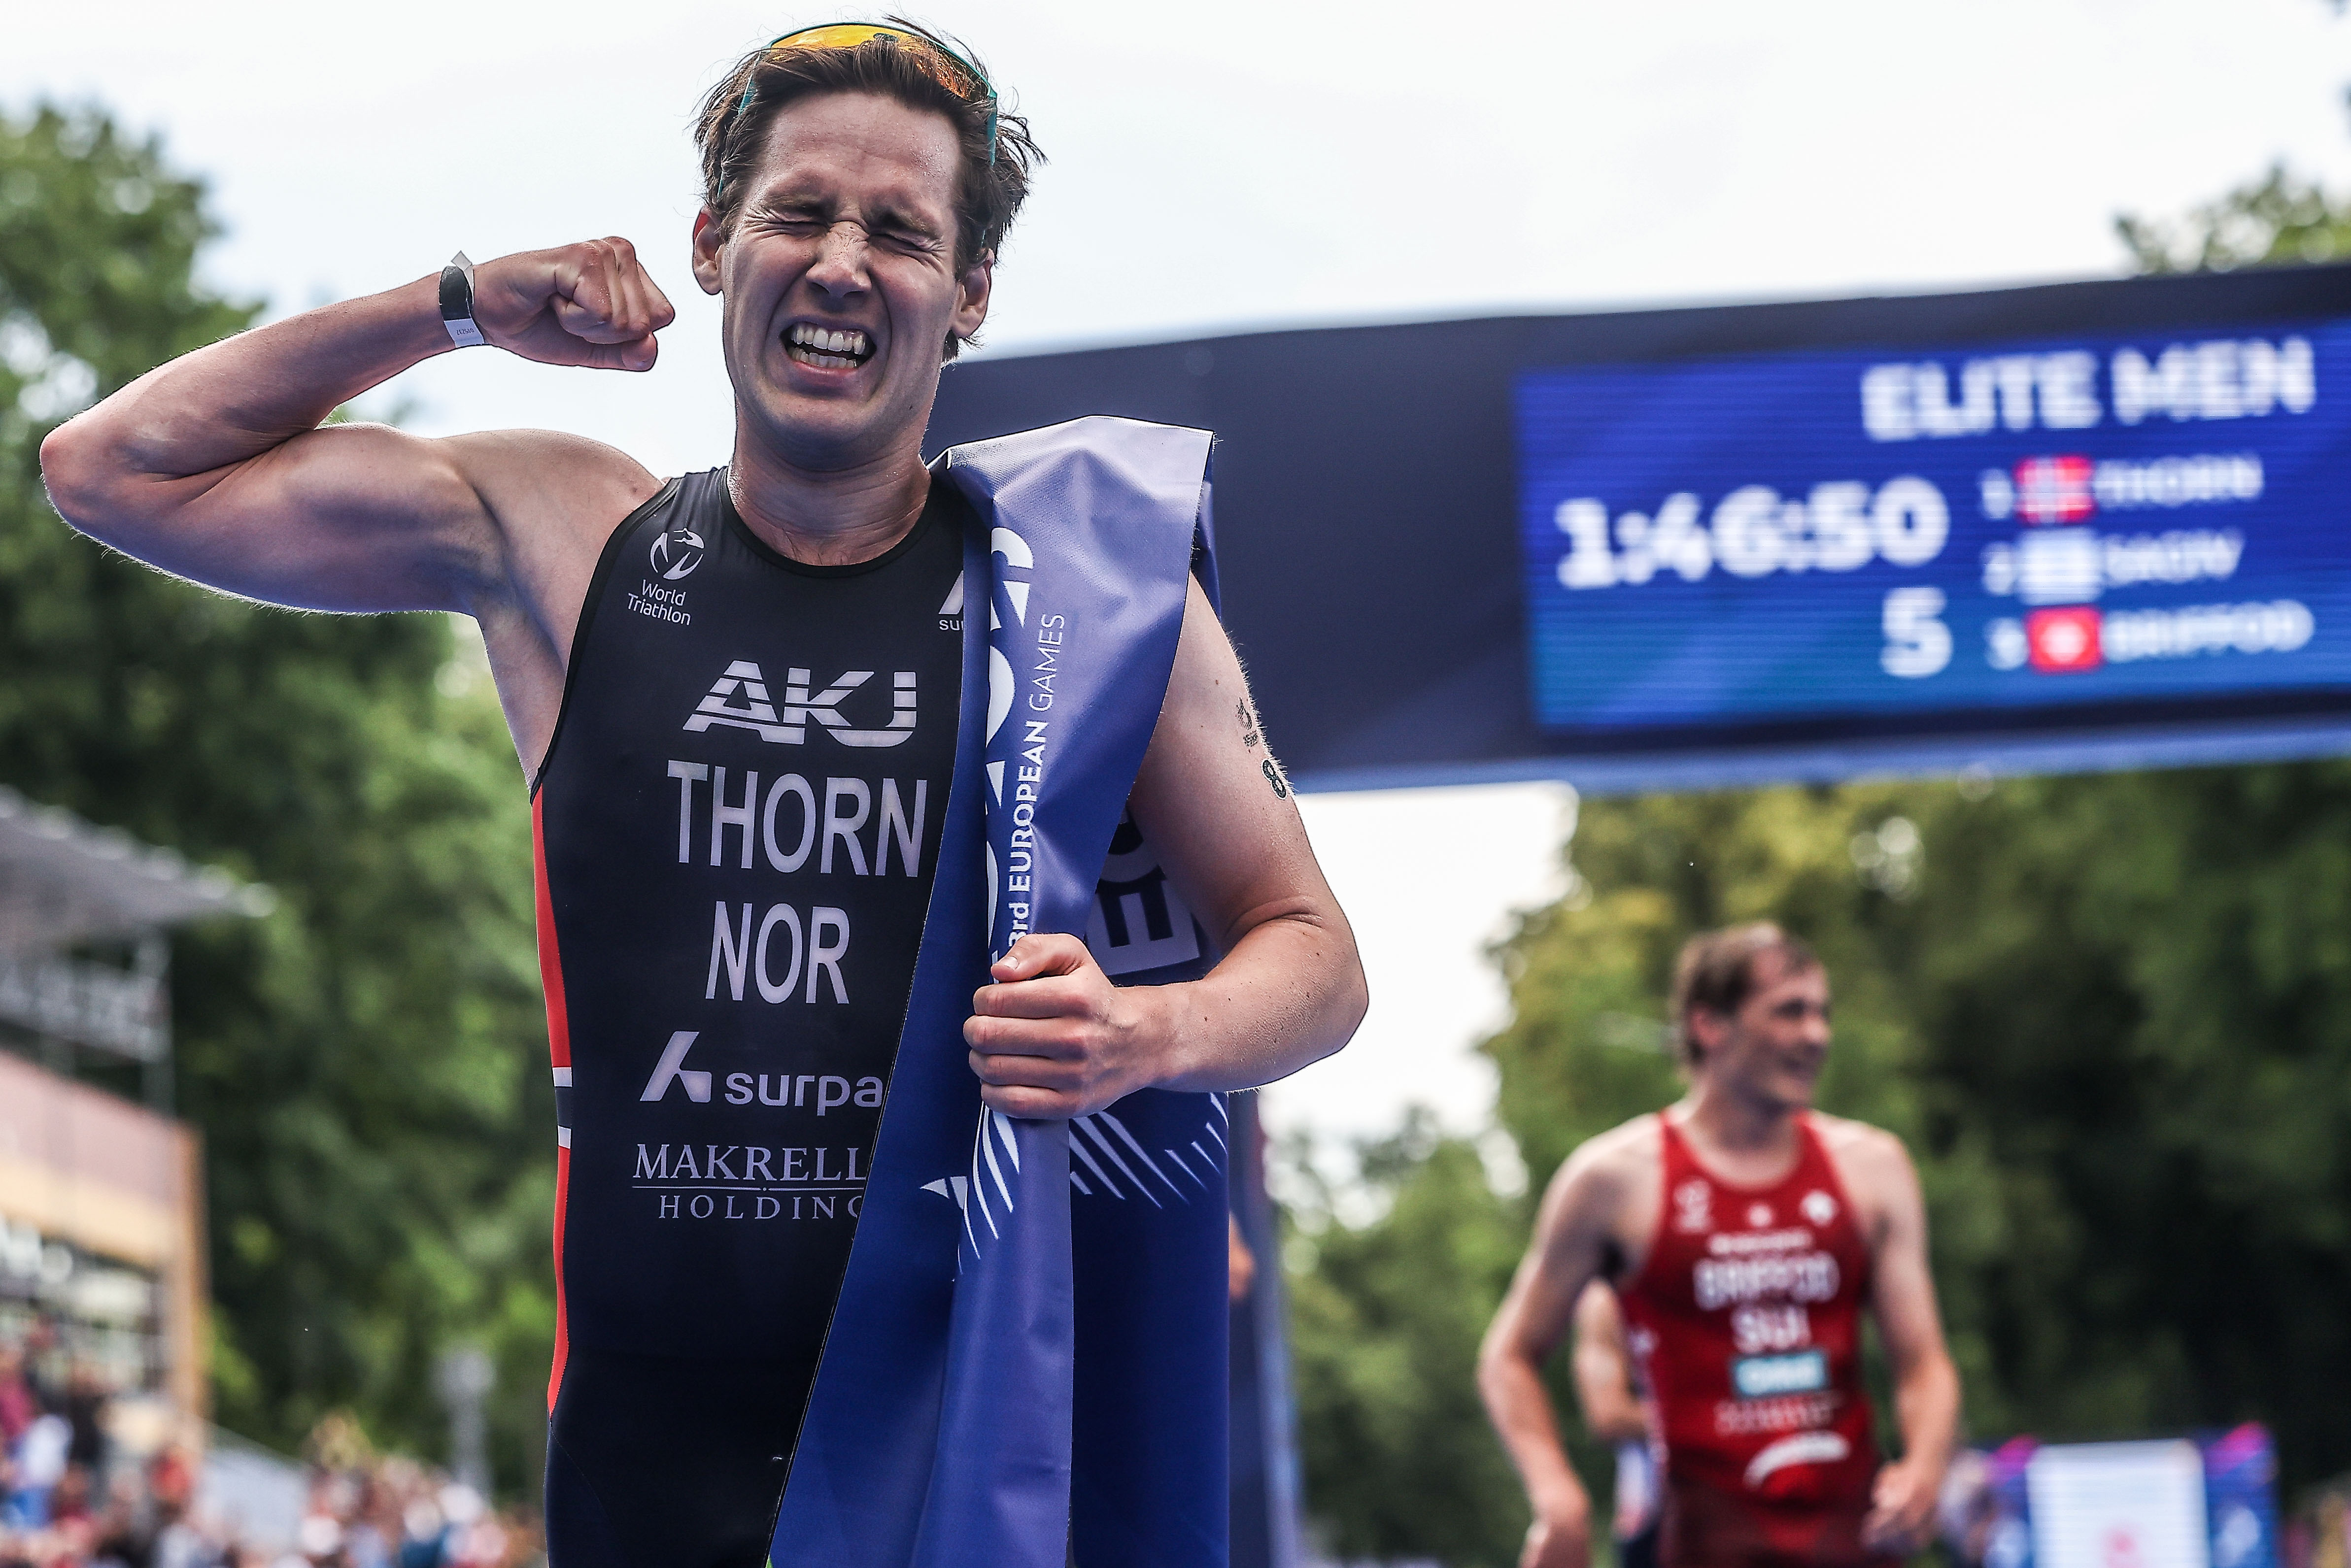 Norweski dublet w triathlonie. Vetle Bergsvik Thorn ze złotem wśród mężczyzn